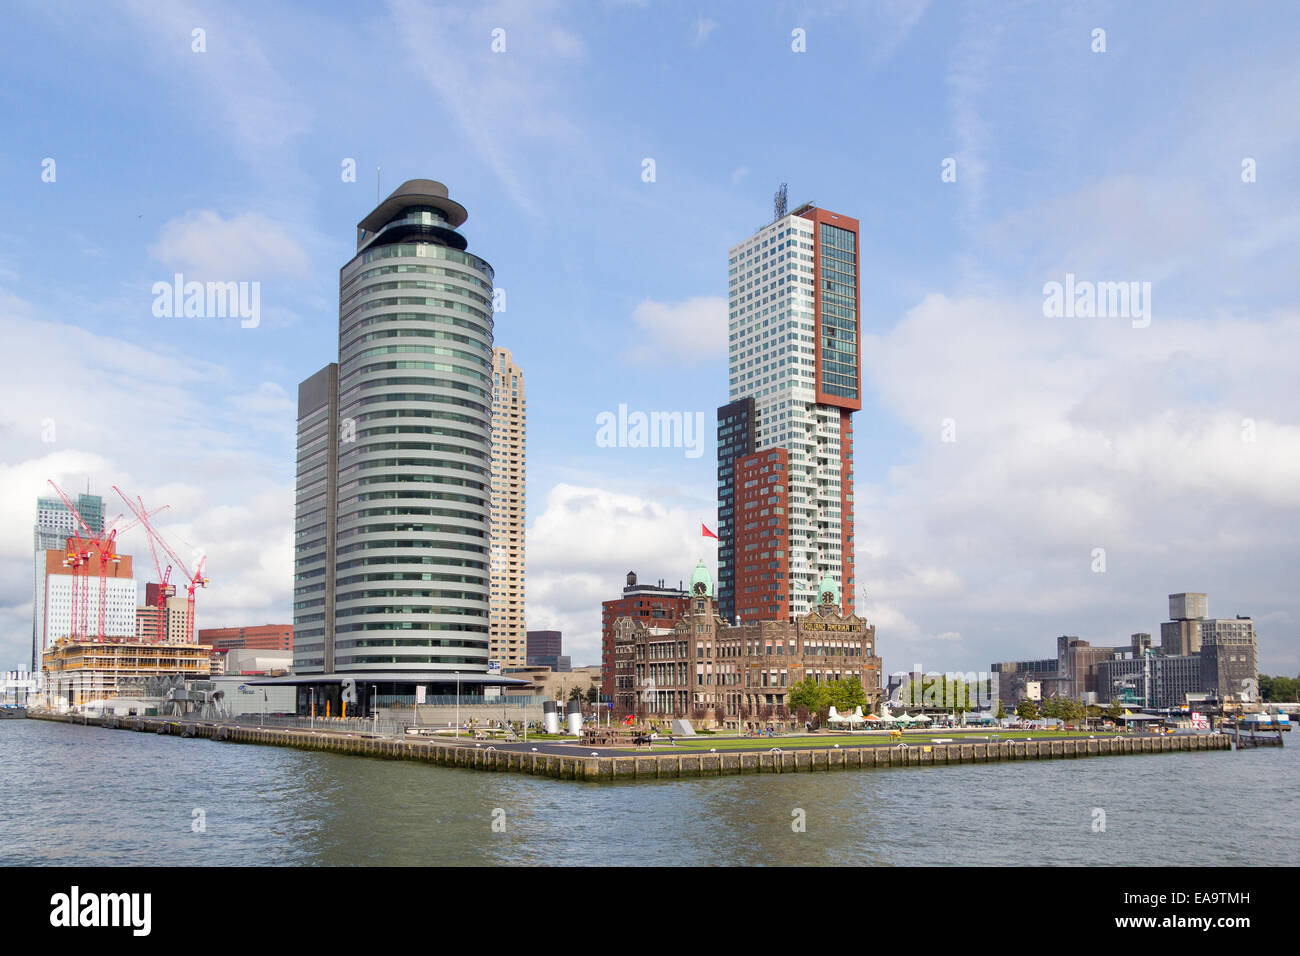 The Kop van Zuid district of Rotterdam, Netherlands Stock Photo